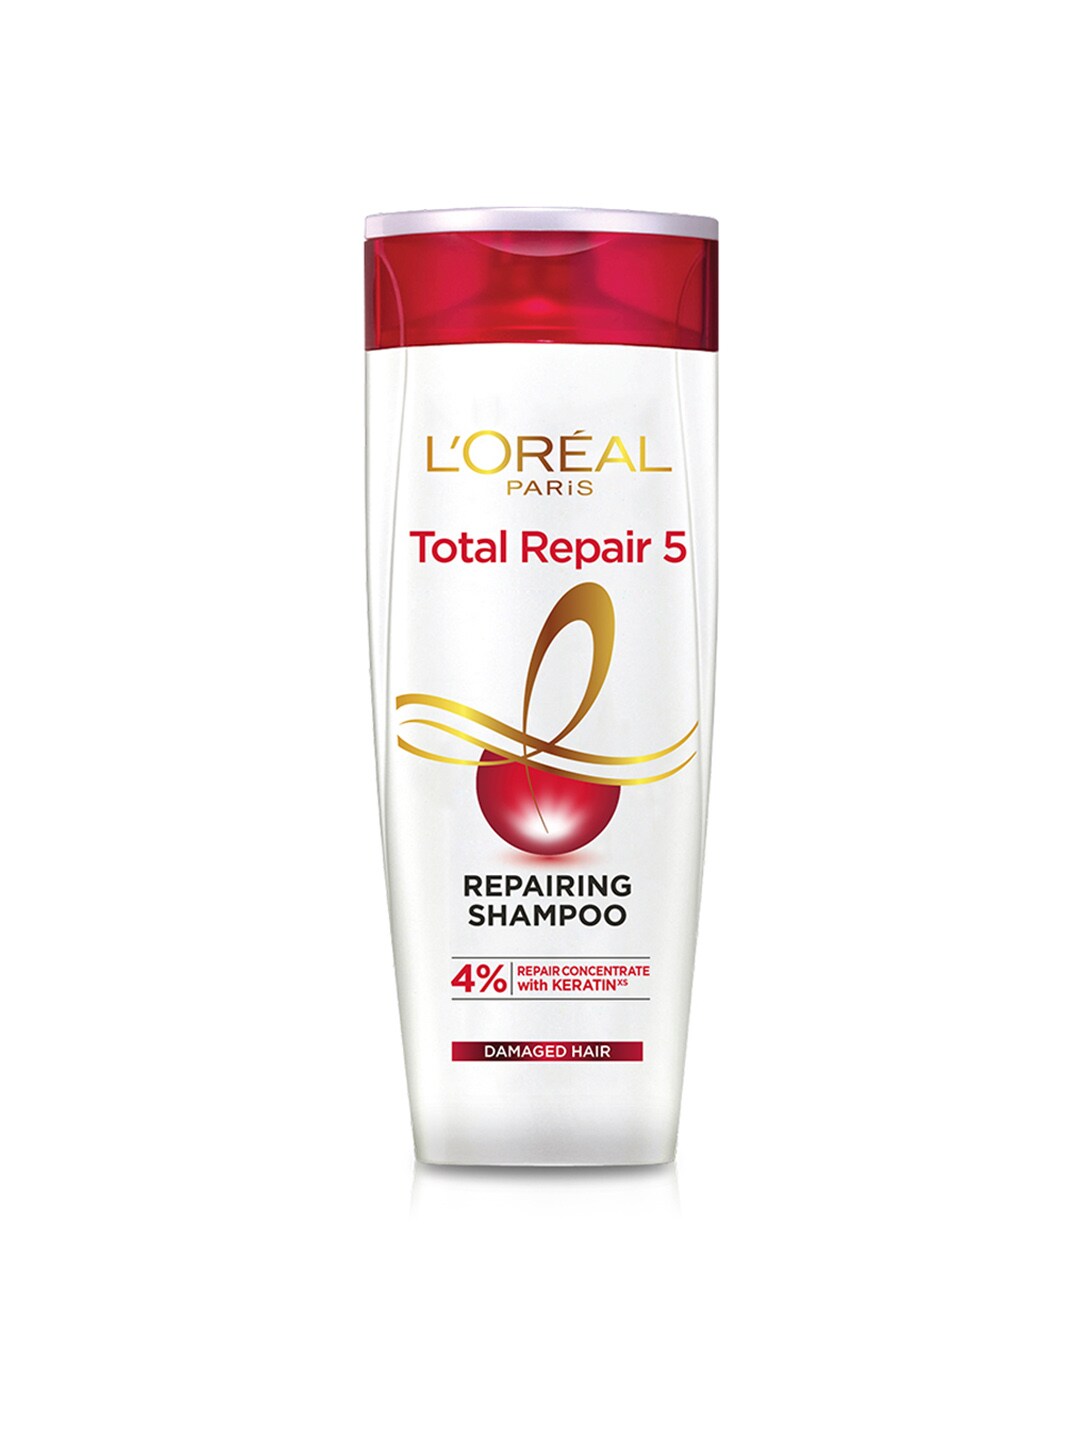 LOreal Paris Total Repair 5 Repairing Shampoo 360 ml Price in India